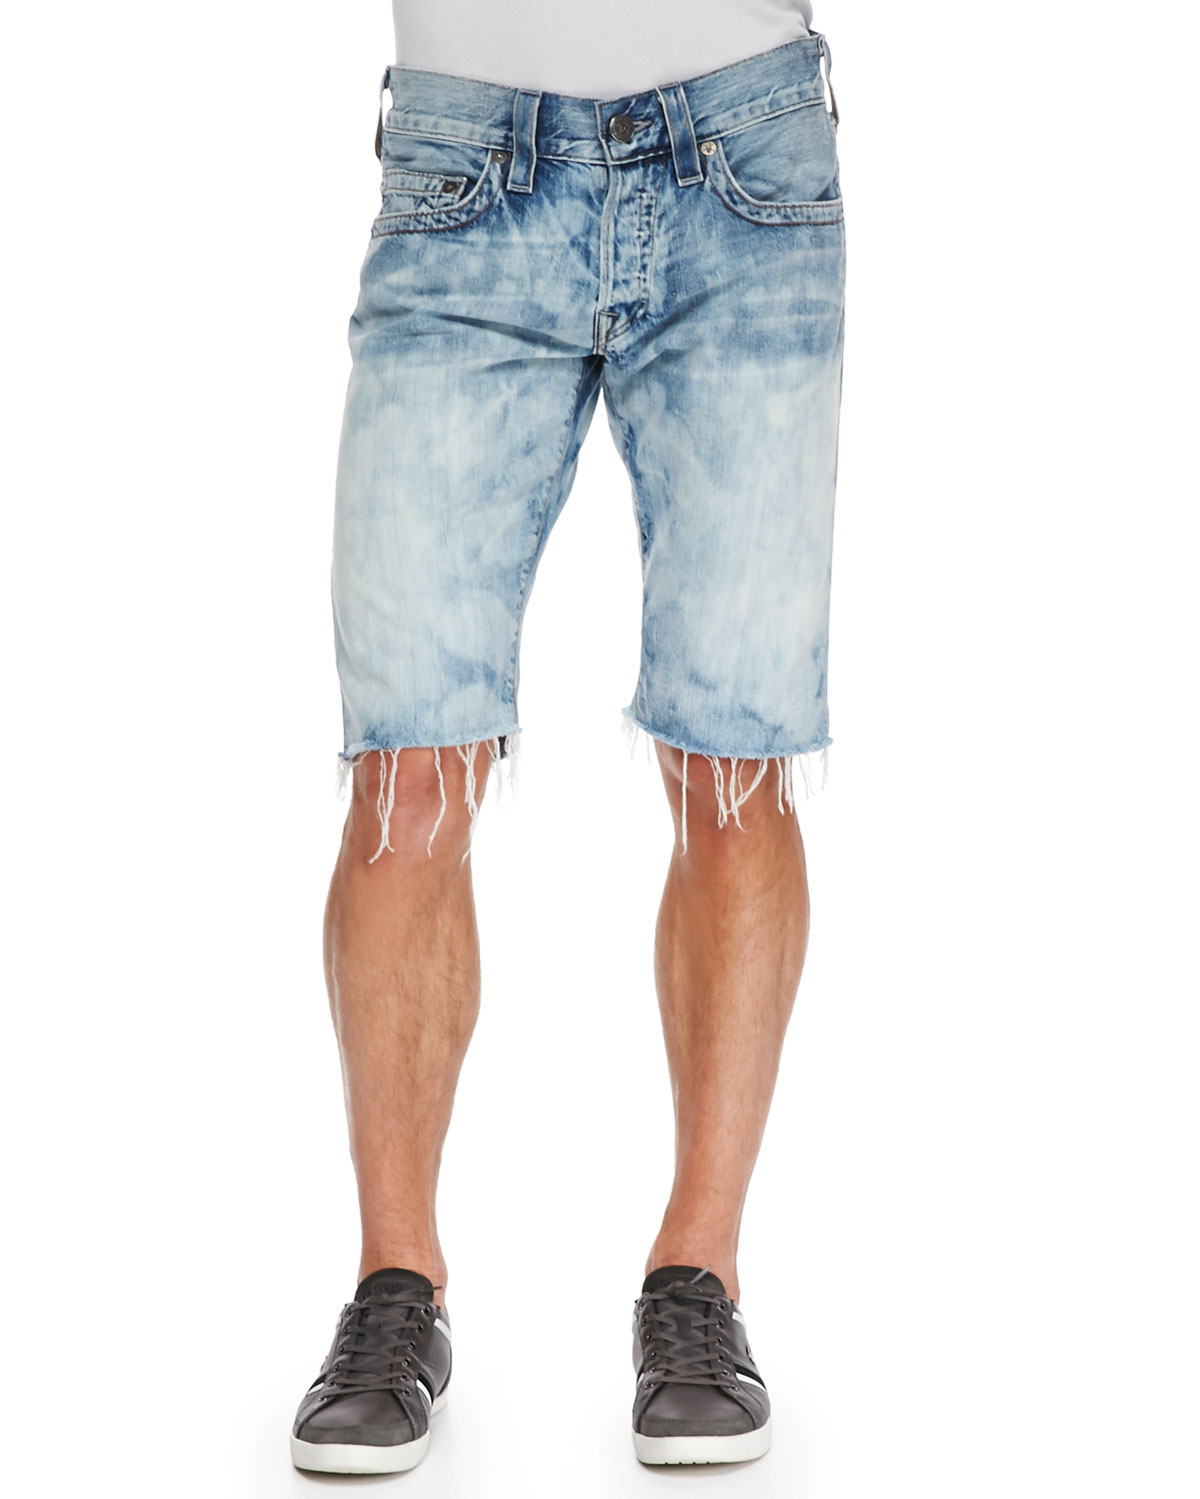 cut jean shorts guys